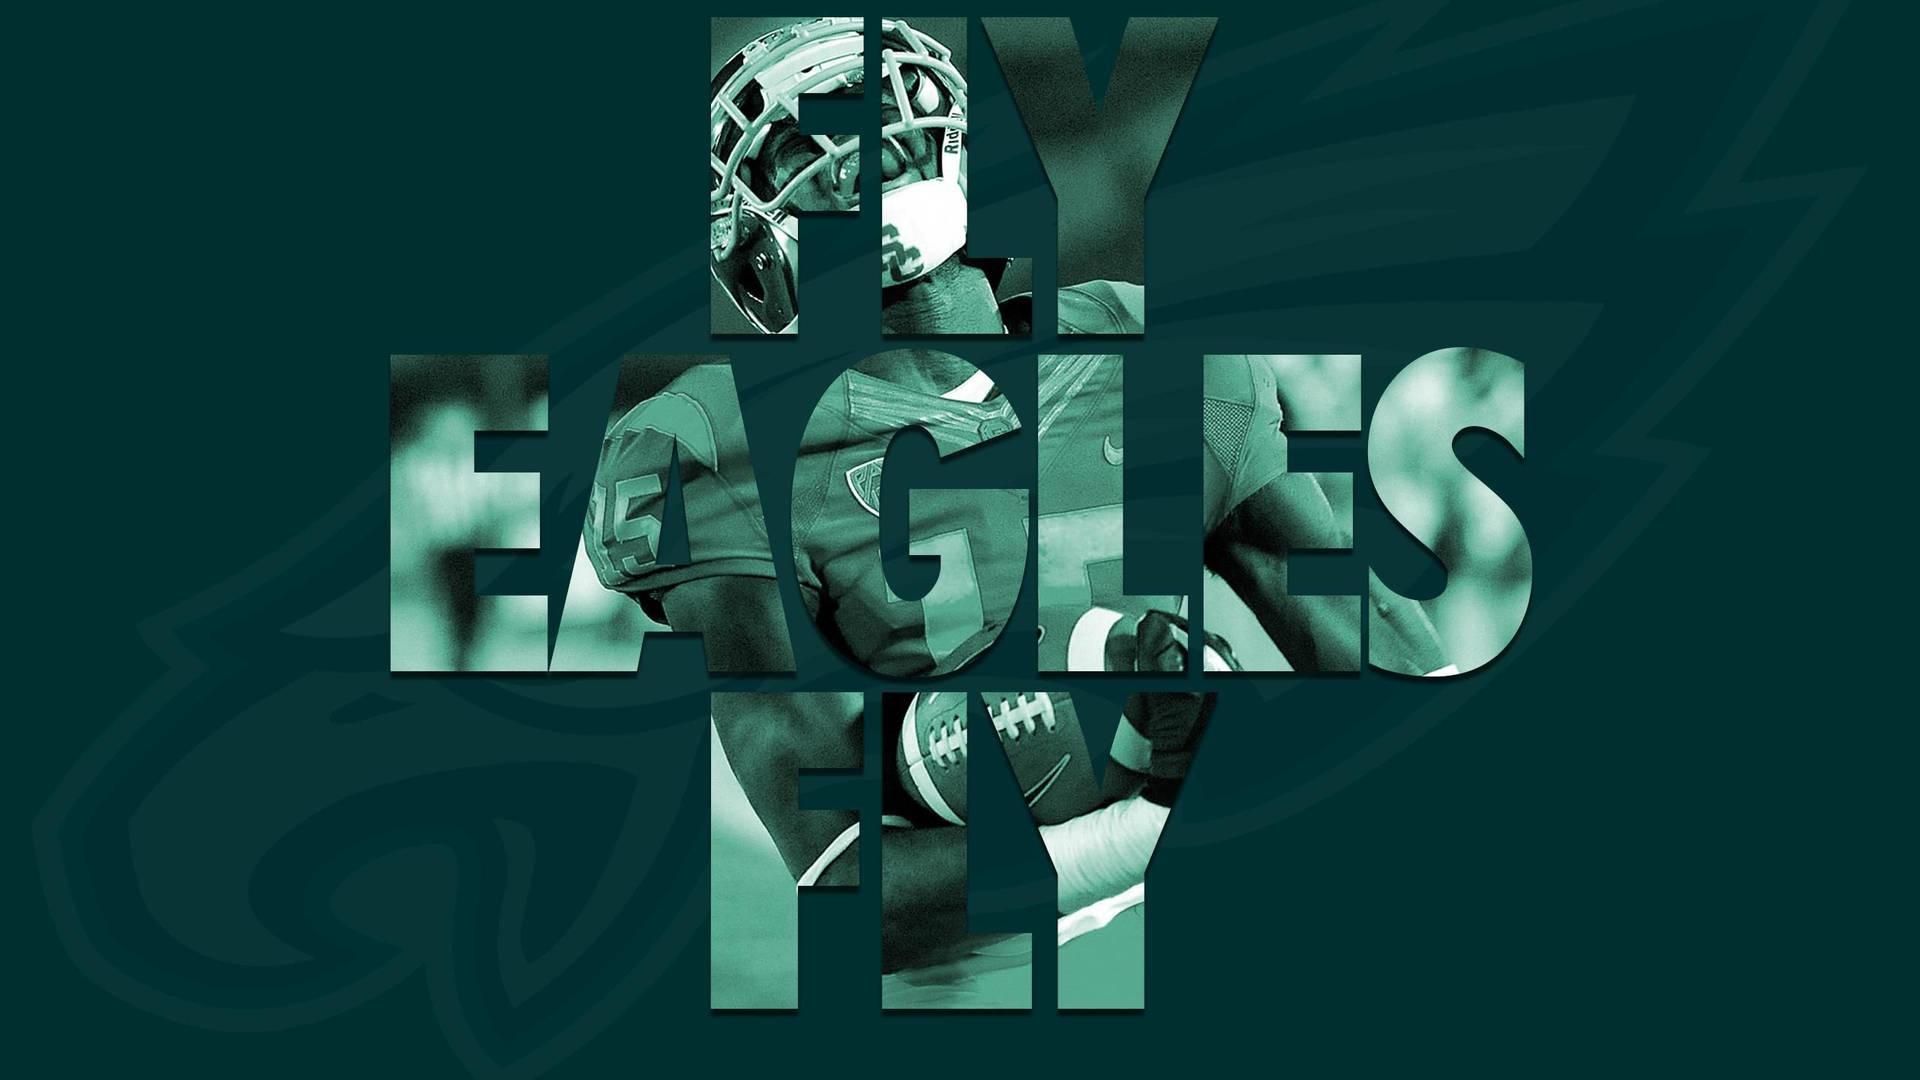 Green Philadelphia Eagles Poster Background